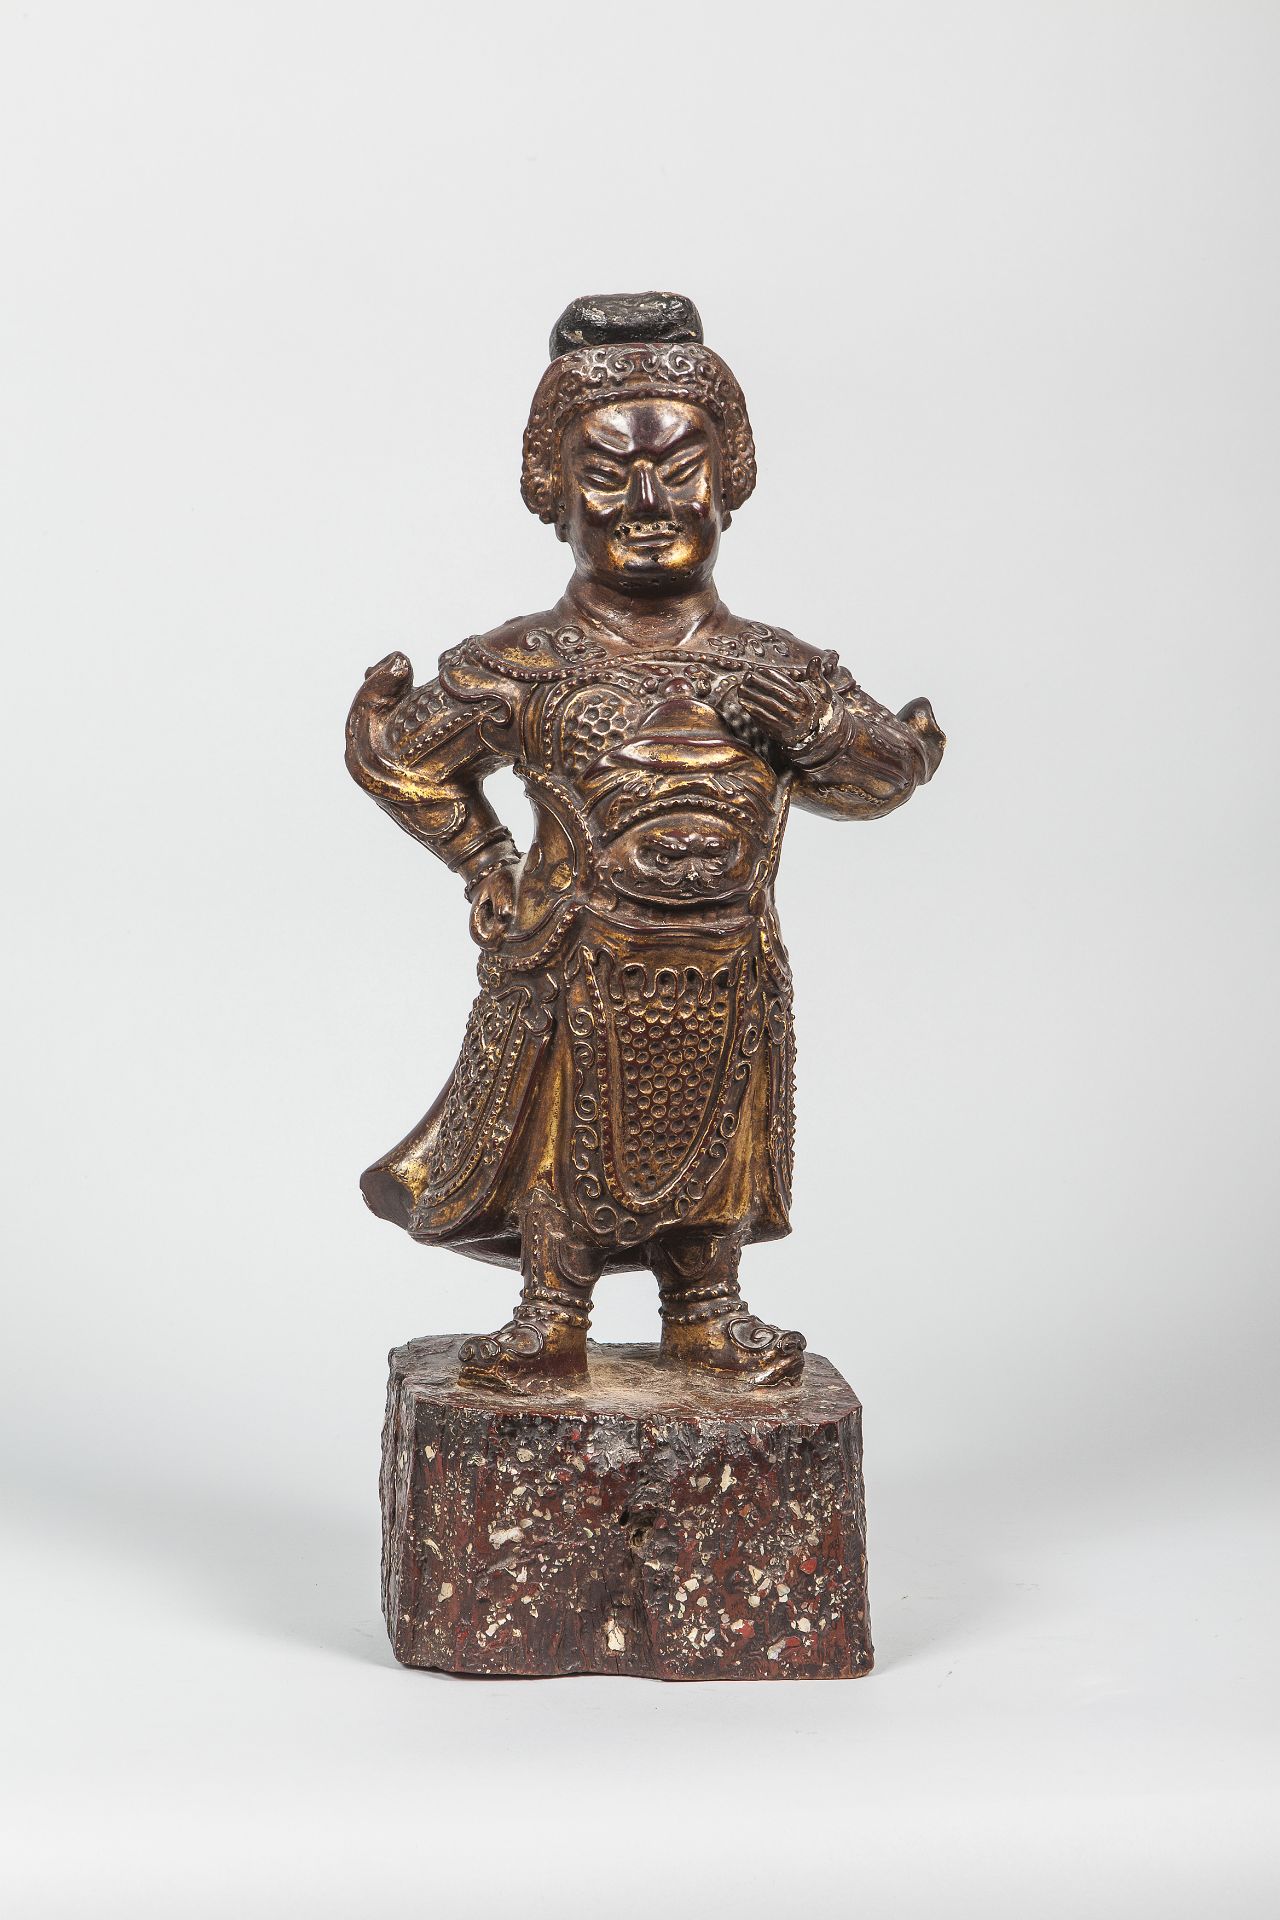 Guandi, élevé au rang de Boddhisattva par la bouddhisme, et modème de vertu par le confucianisme,